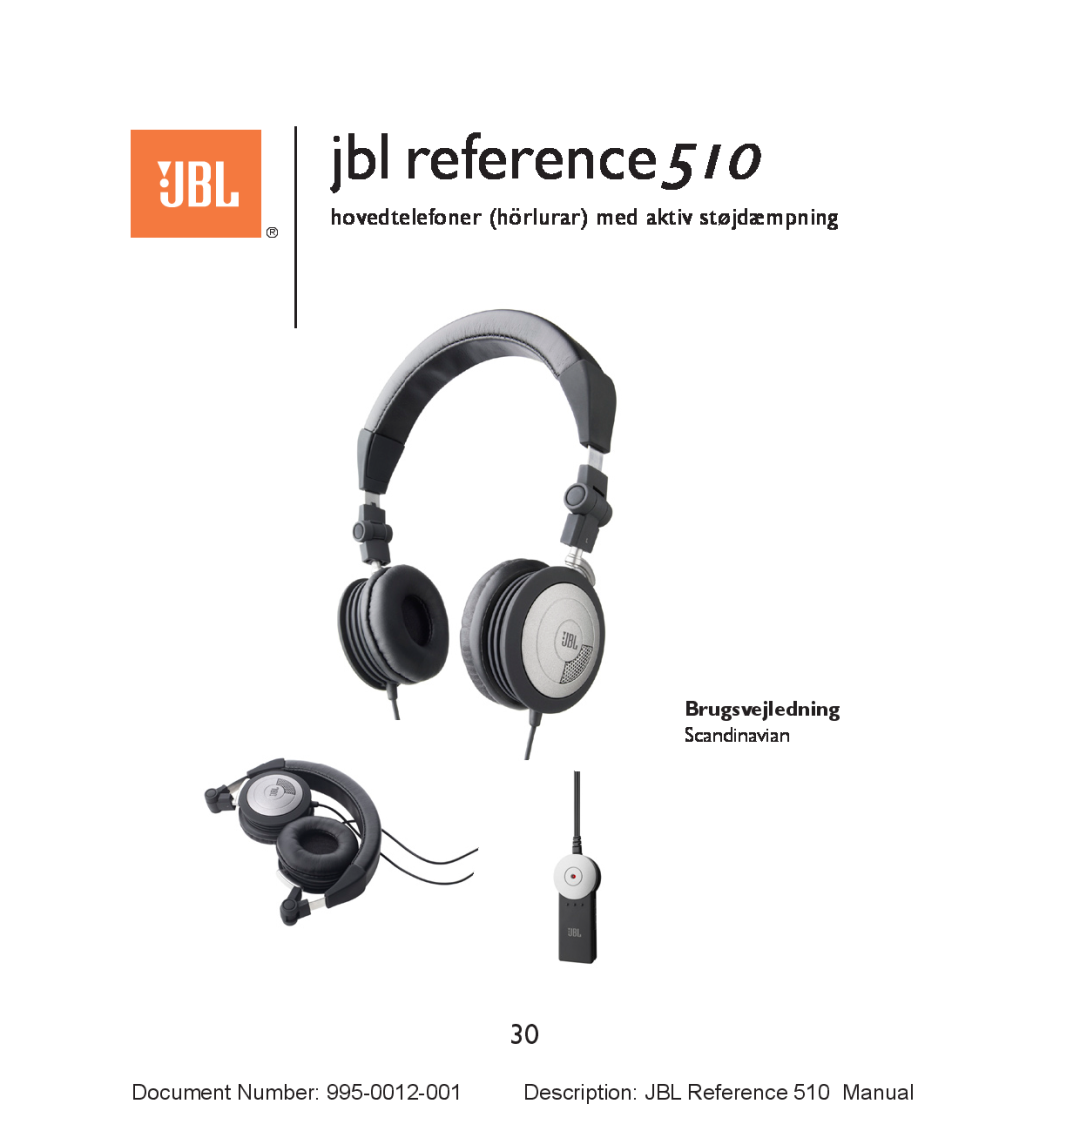 JBL manual hovedtelefoner hörlurar med aktiv støjdæmpning, Brugsvejledning, jbl reference510 